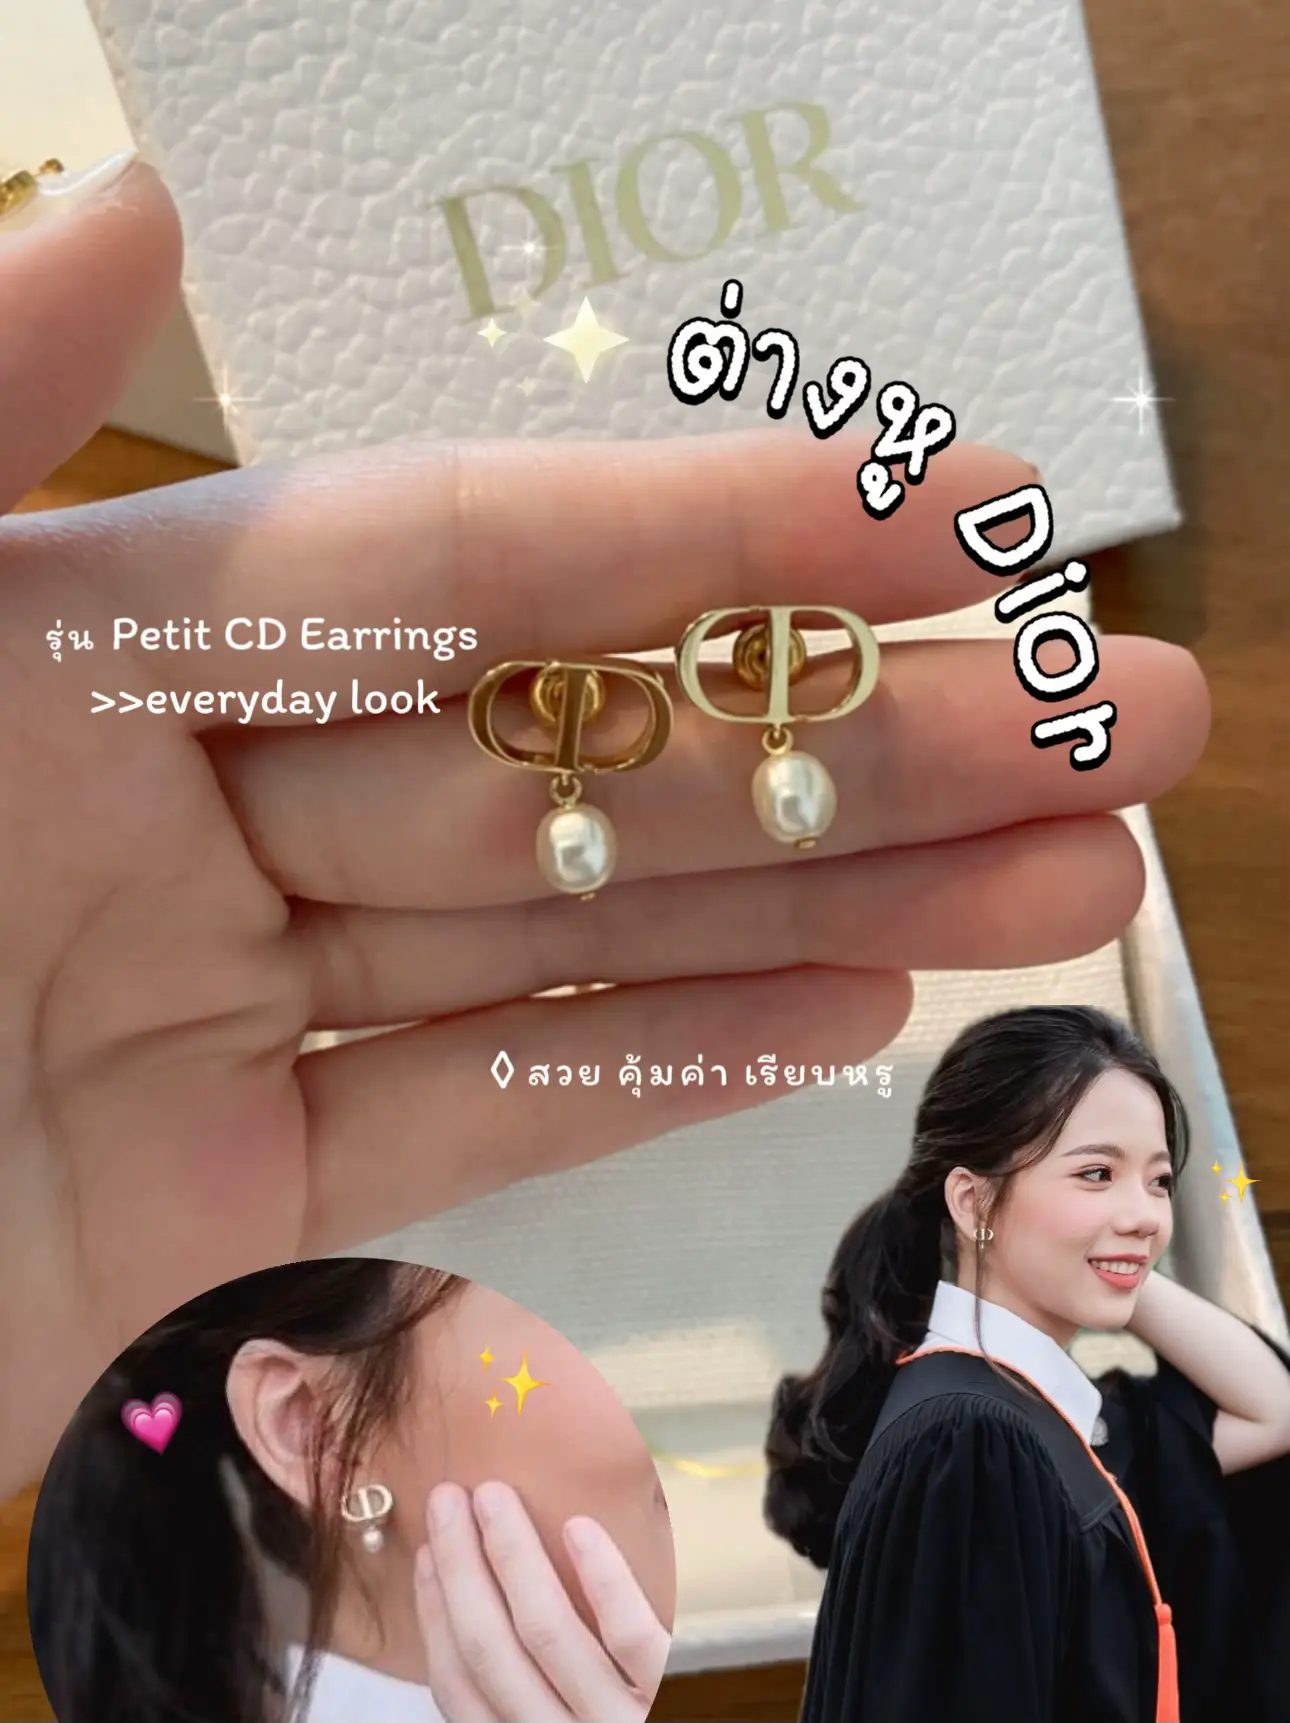 รูปภาพของ สวัสดีค่า วันนี้เราจะมารีวิวต่างหูแบรนด์เนมคู่แรกของเรา🤏🏻✨  👉🏻 เราเลือกซื้อเป็นต่างหูของ Dior ชื่อรุ่น Petit CD Earrings   เป็นรุ่นที่สามารถใส่ได้แบบ everylook เลยน้า น้องมีขนาดกลาง  ไม่เล็กมาก แต่ใส่แล้วลูกคุณสุดๆค่า ความมุกทำให้มีความหวานมากขึ้น แต่ถ้าวันไหนอยากแต่งตัวเท่ห์ๆน้องก็เข้าเหมือนกันนะ